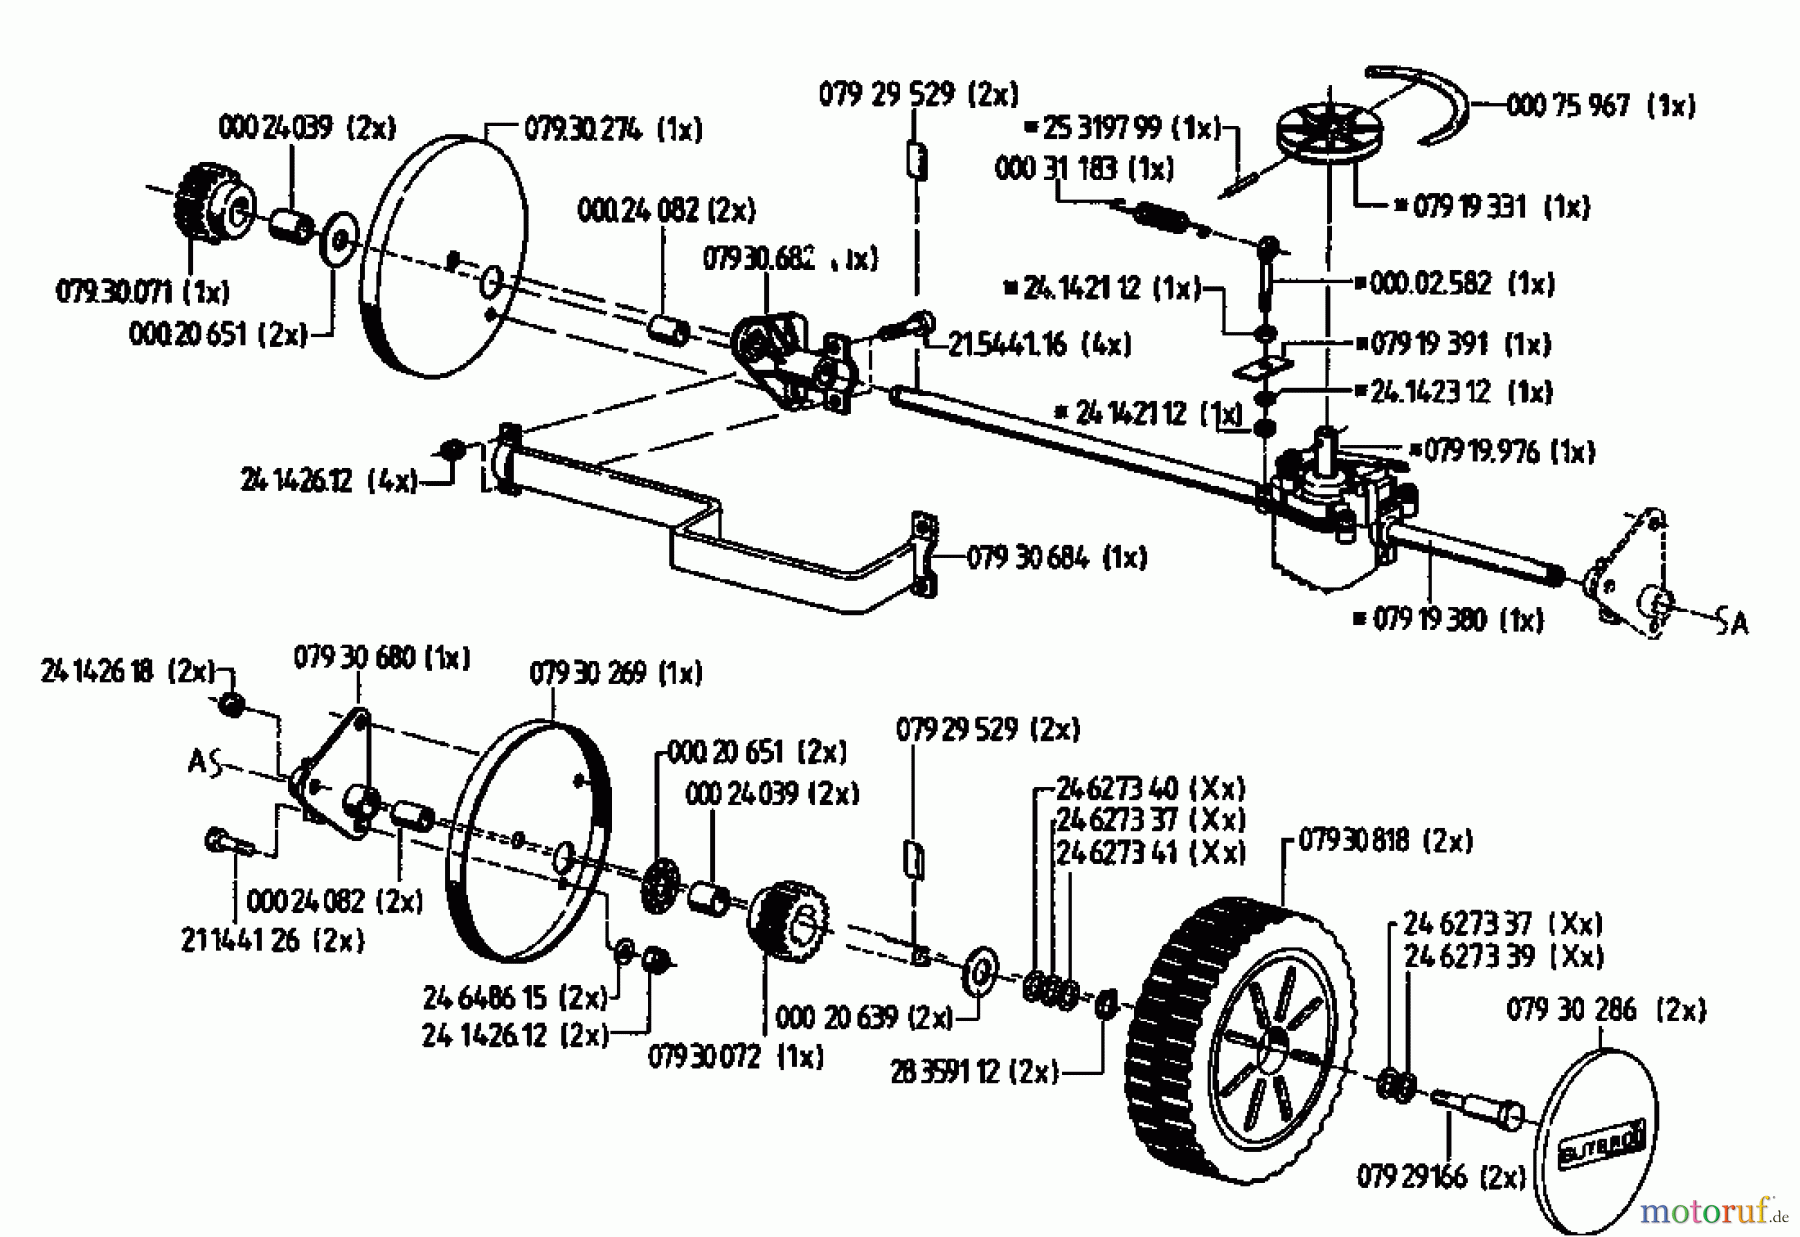  Gutbrod Petrol mower self propelled HB 48 RL 02815.01  (1994) Gearbox, Wheels